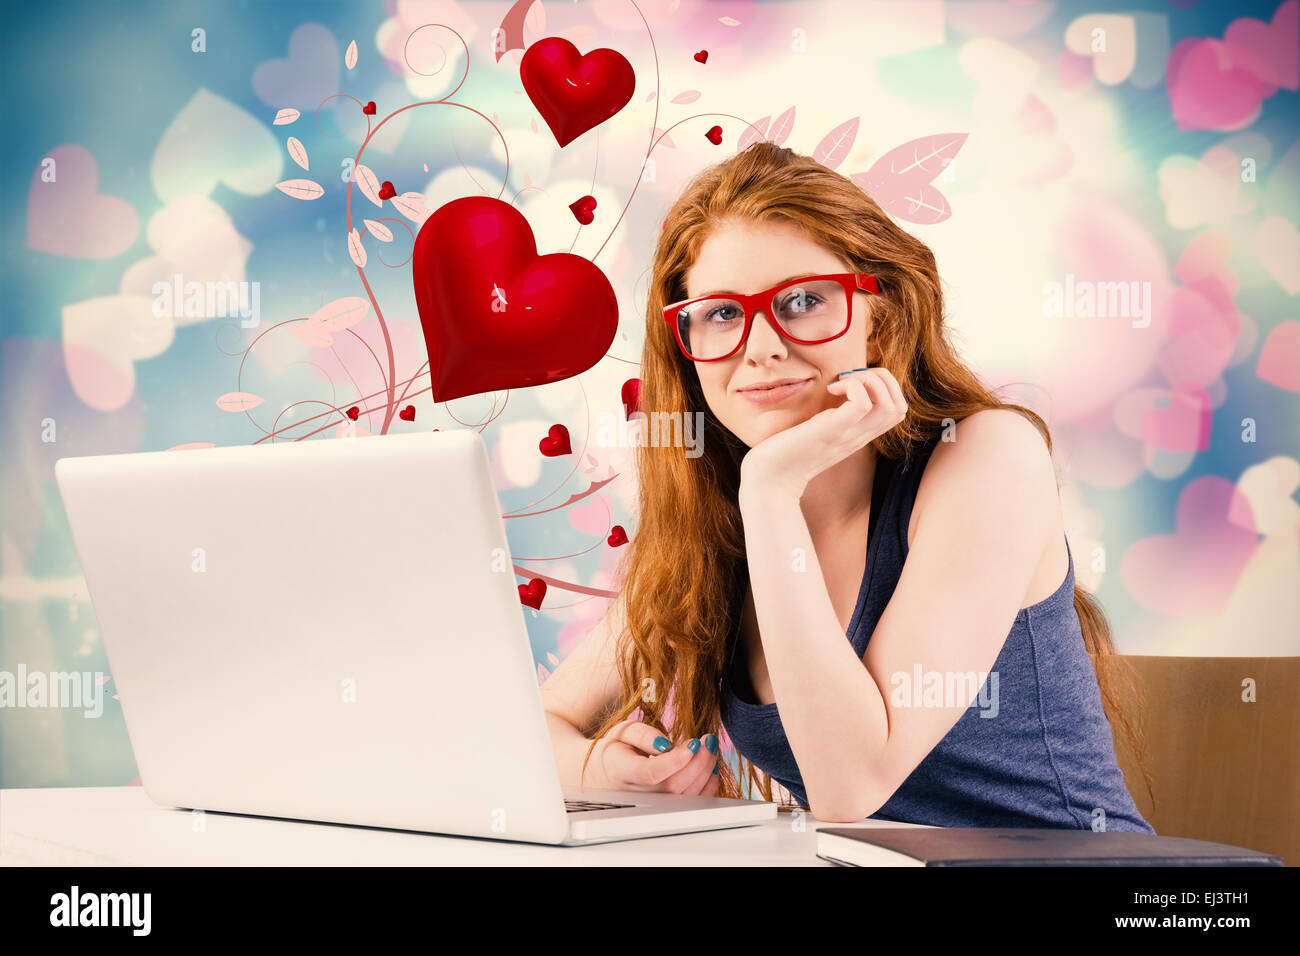 Immagine composita di pretty redhead lavorando sul computer portatile Foto Stock